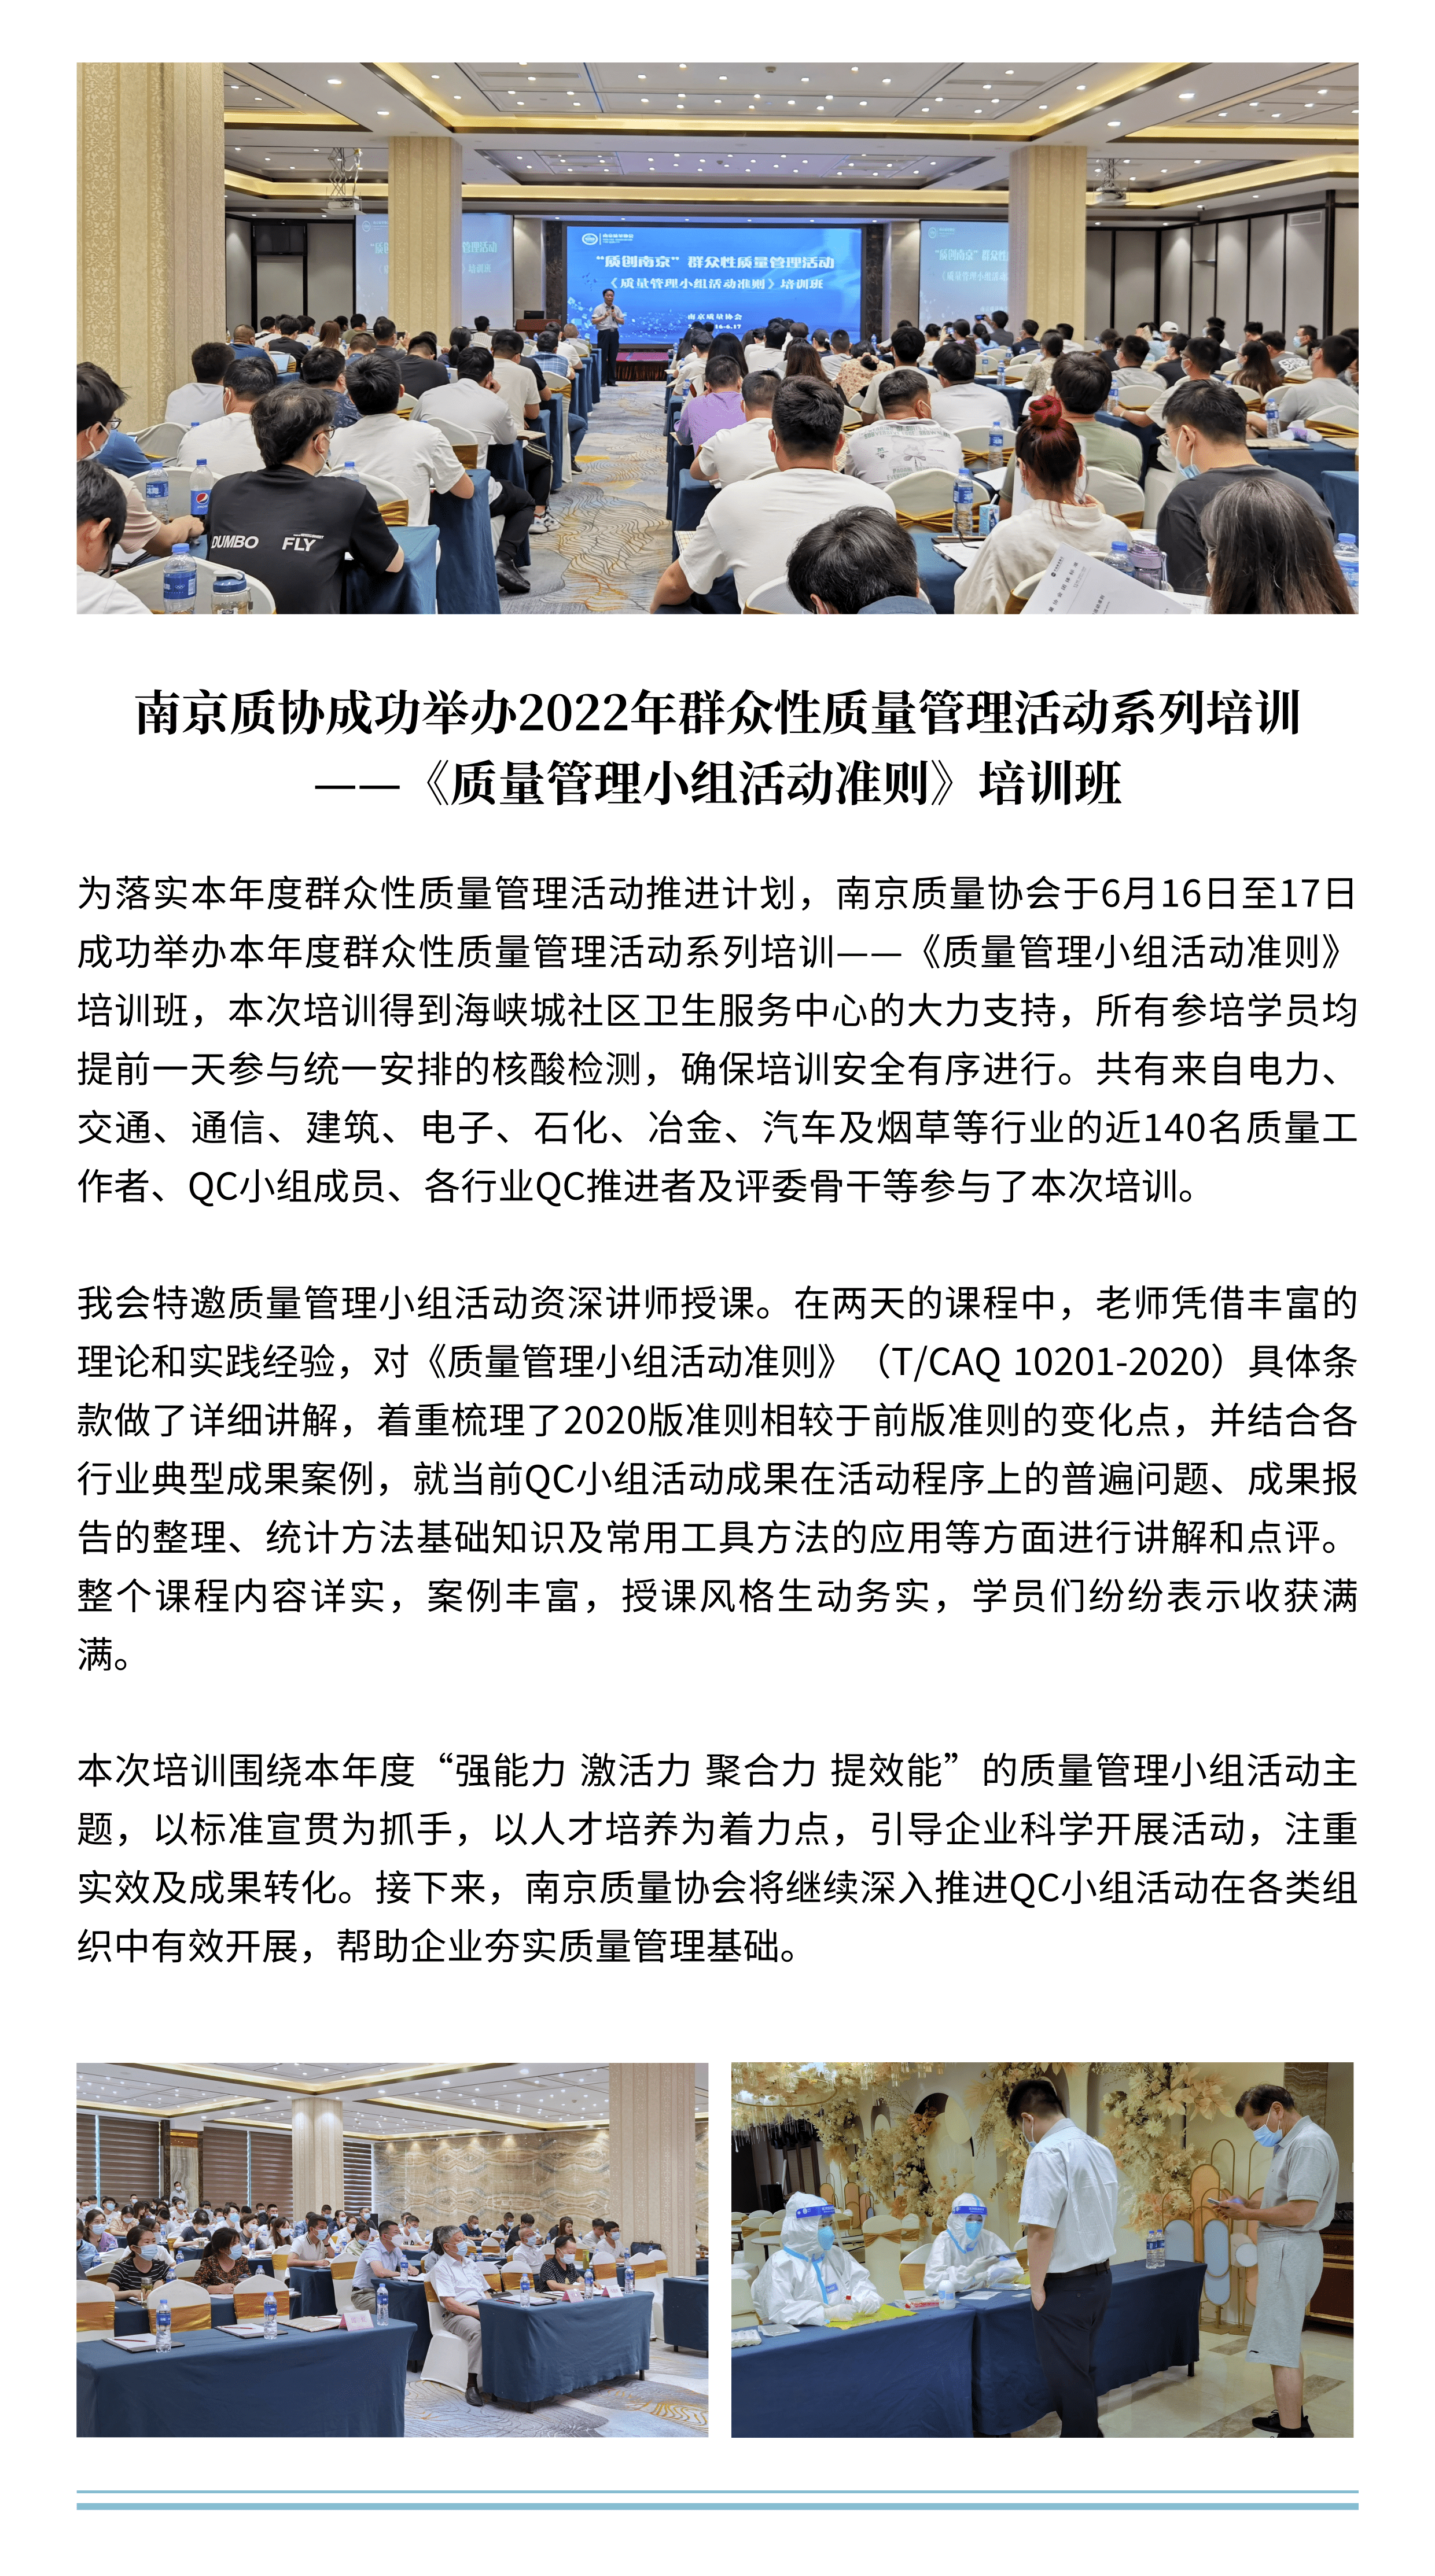 清新文艺旅游出行日报简讯 (2).png